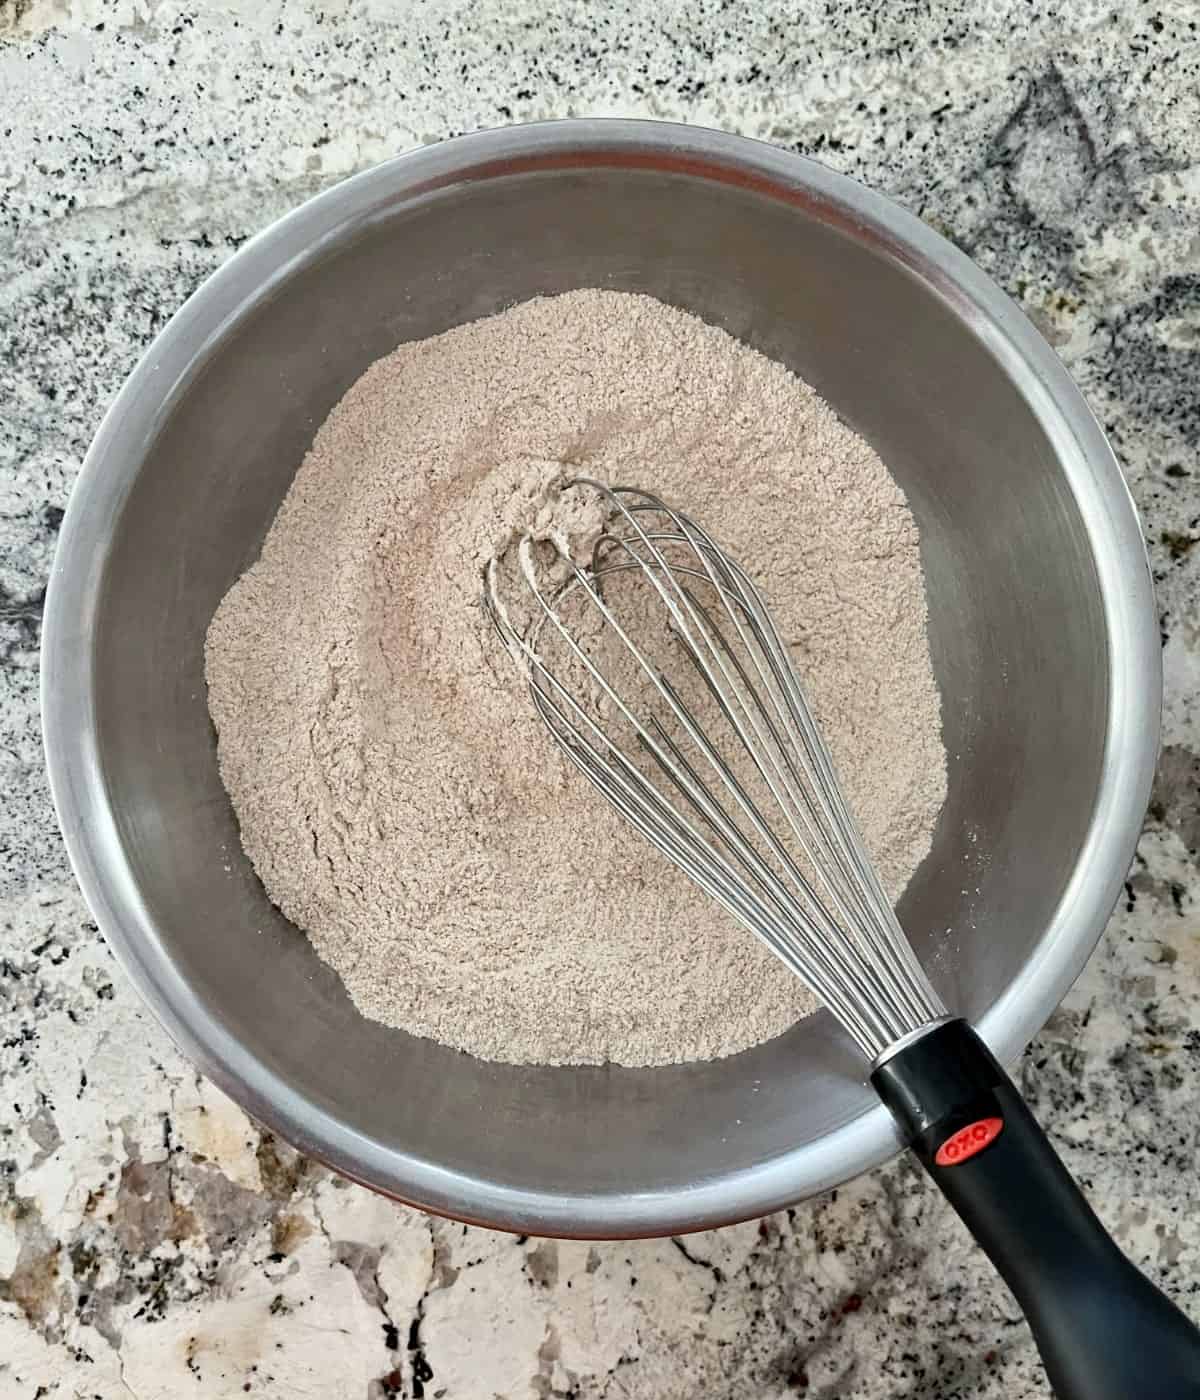 Whisking all-purpose flour, white whole wheat flour, Truvia, baking soda, baking powder and cinnamon in mixing bowl.